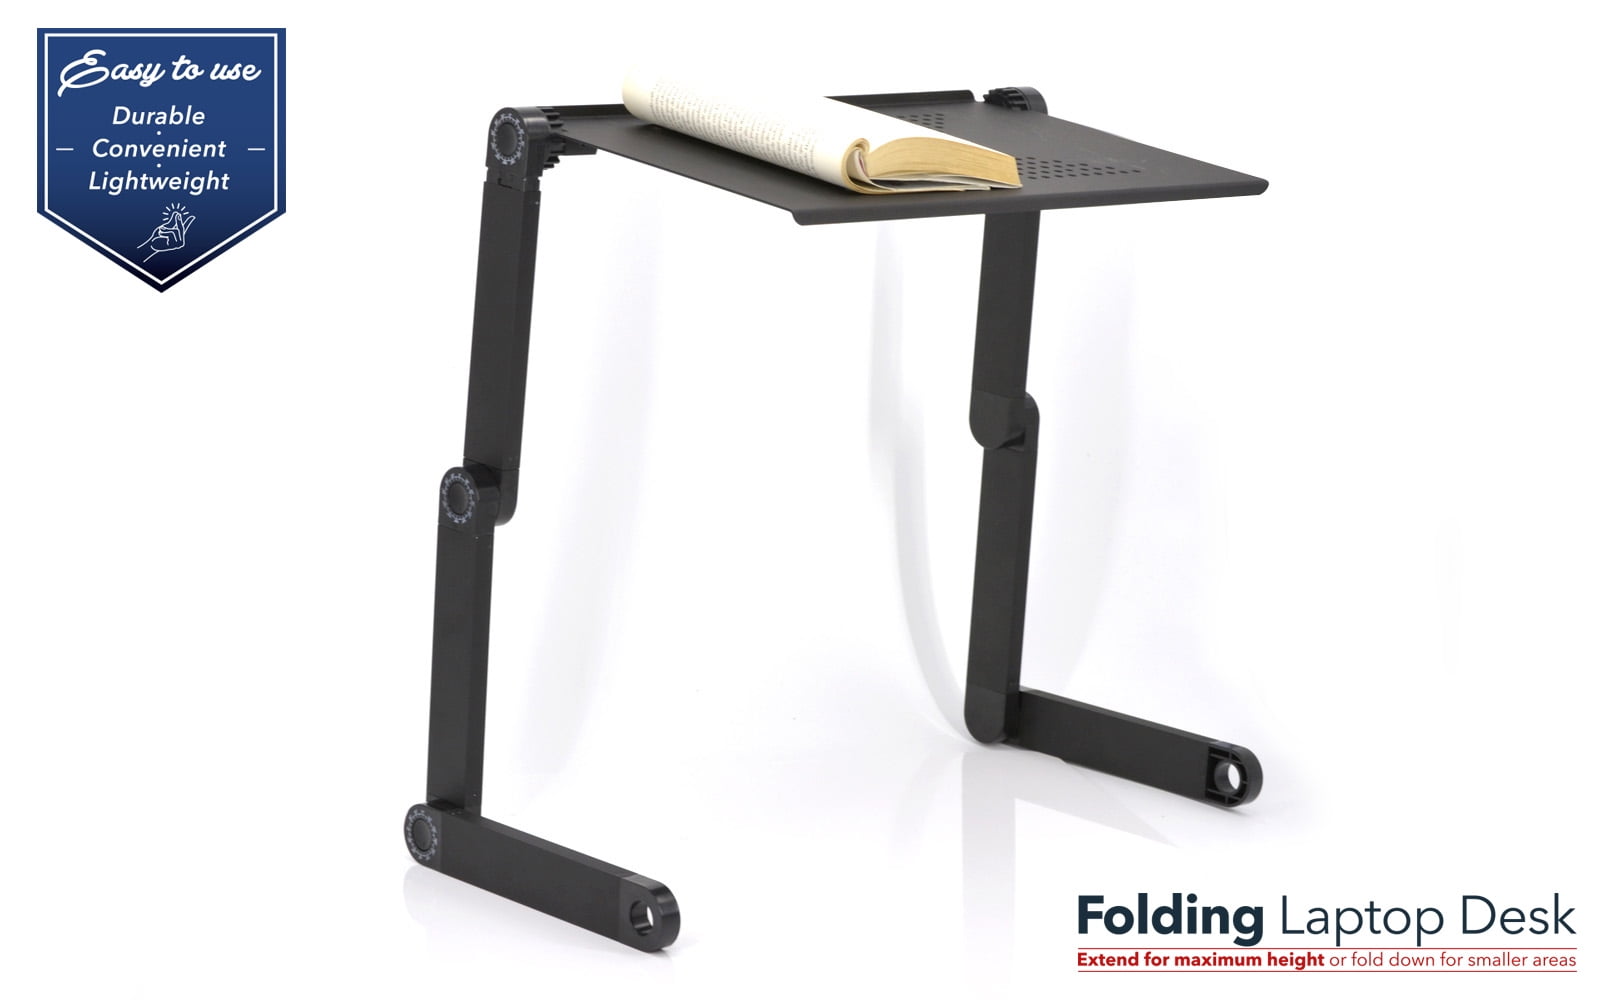 Elekin Folding Laptop Desk Review - TechWalls